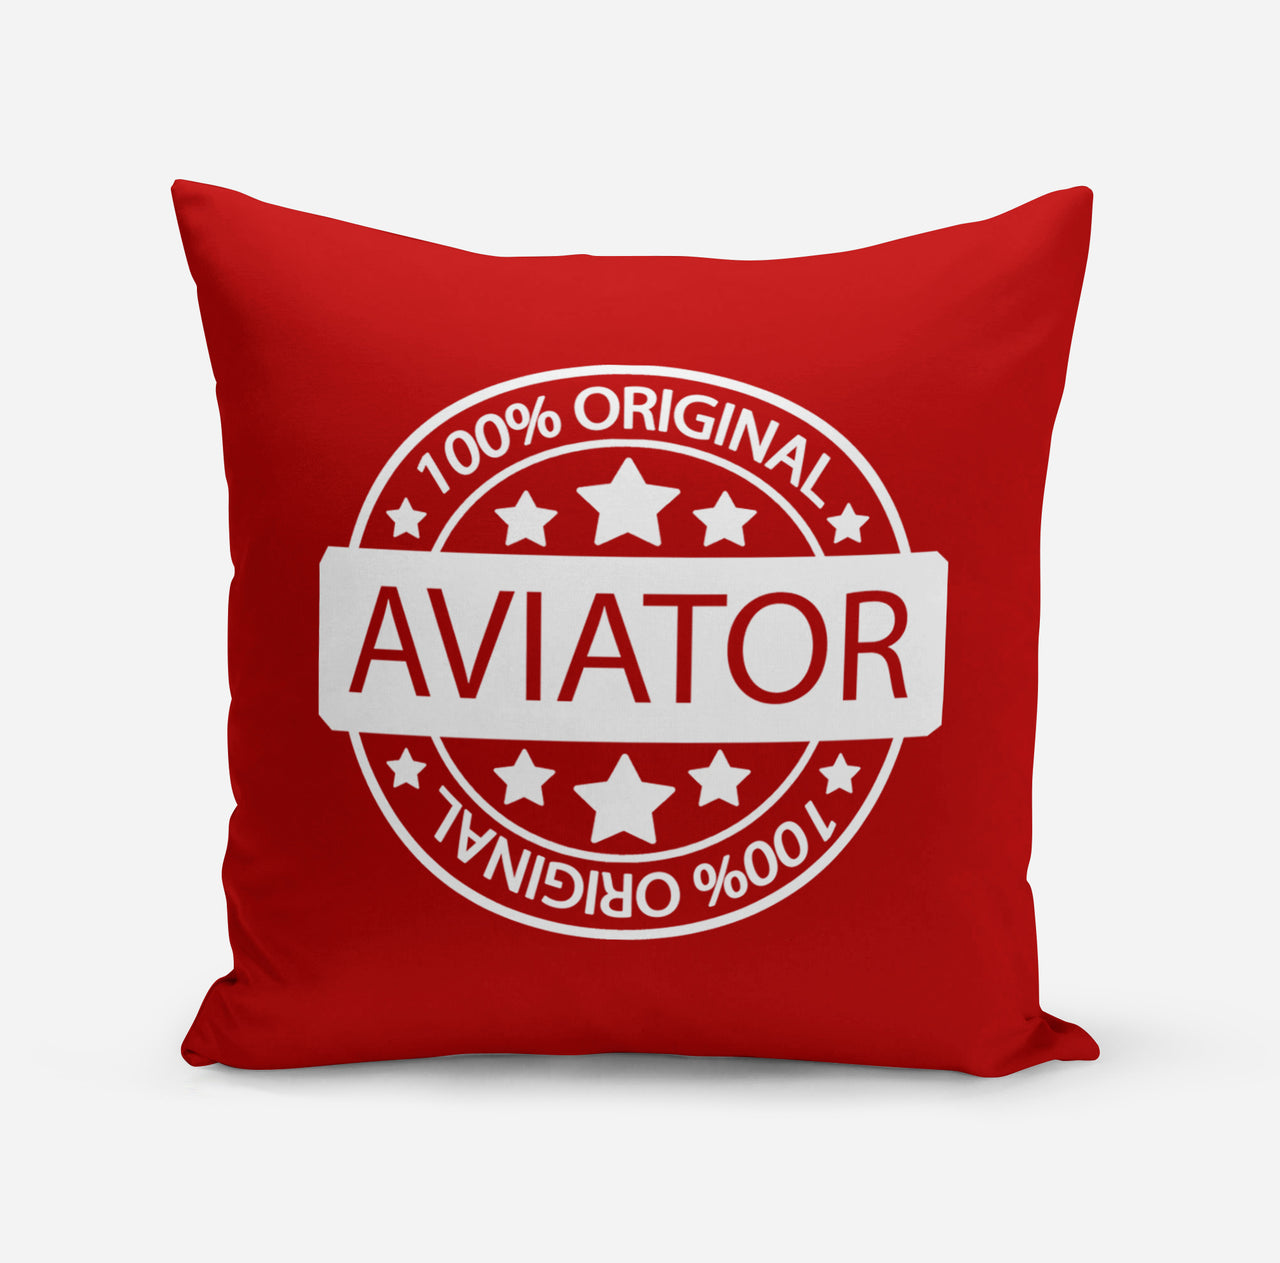 100 Original Aviator Designed Pillows